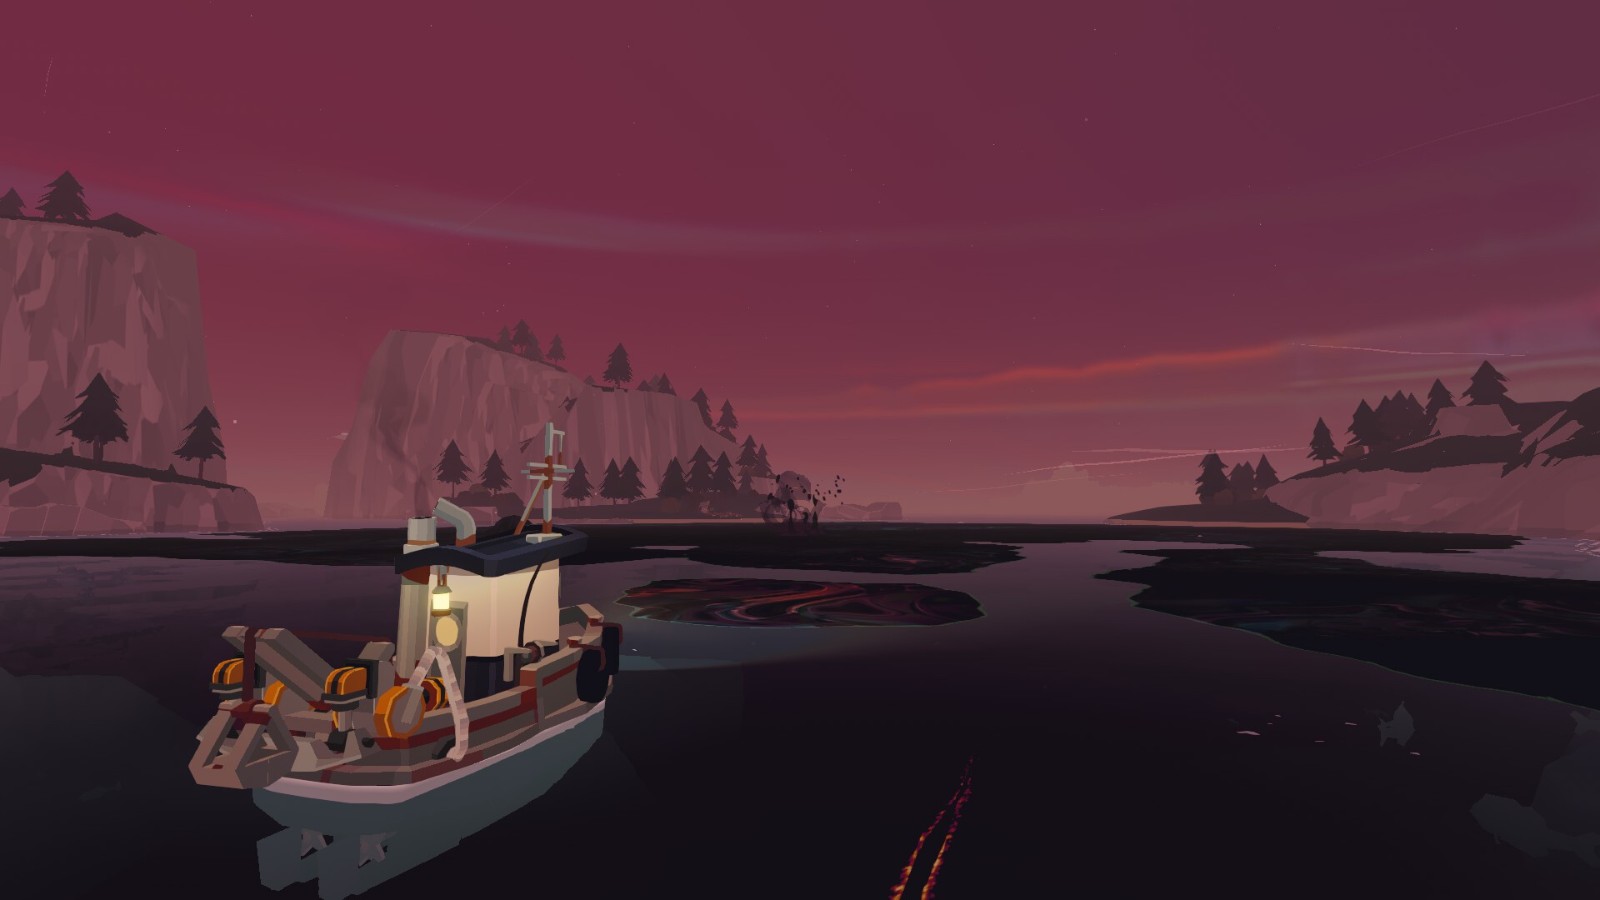 《渔帆暗涌》第二款DLC“铁岛深渊”8月15日上线